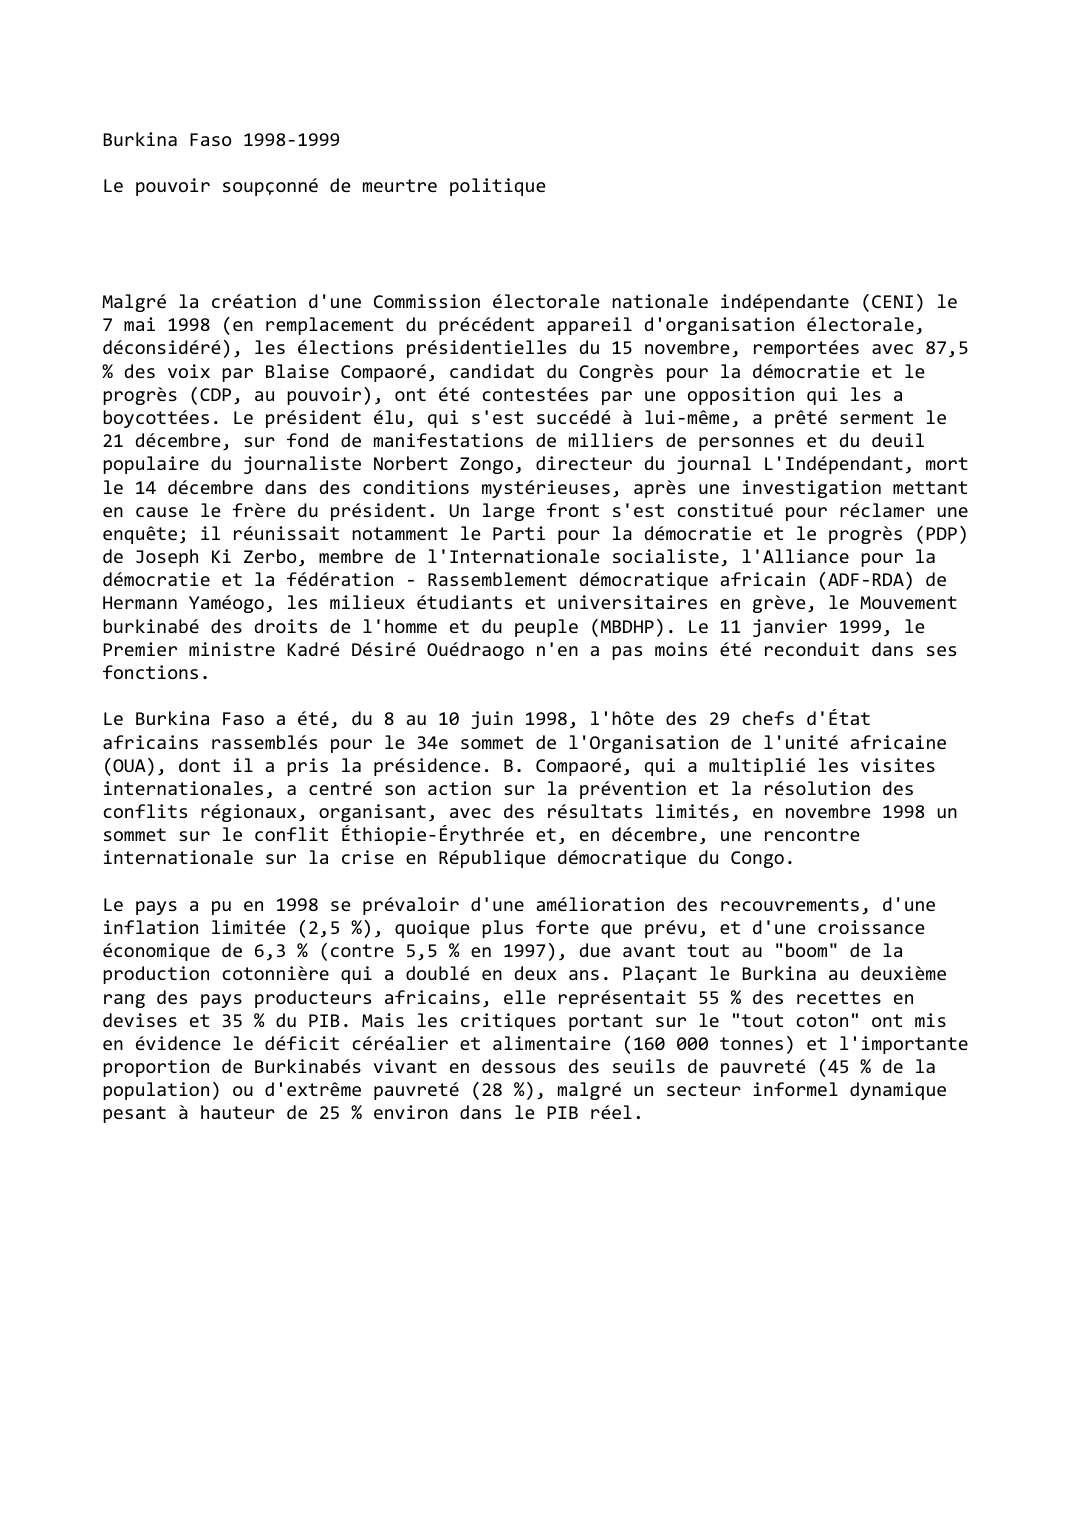 Prévisualisation du document Burkina Faso (1998-1999)

Le pouvoir soupçonné de meurtre politique